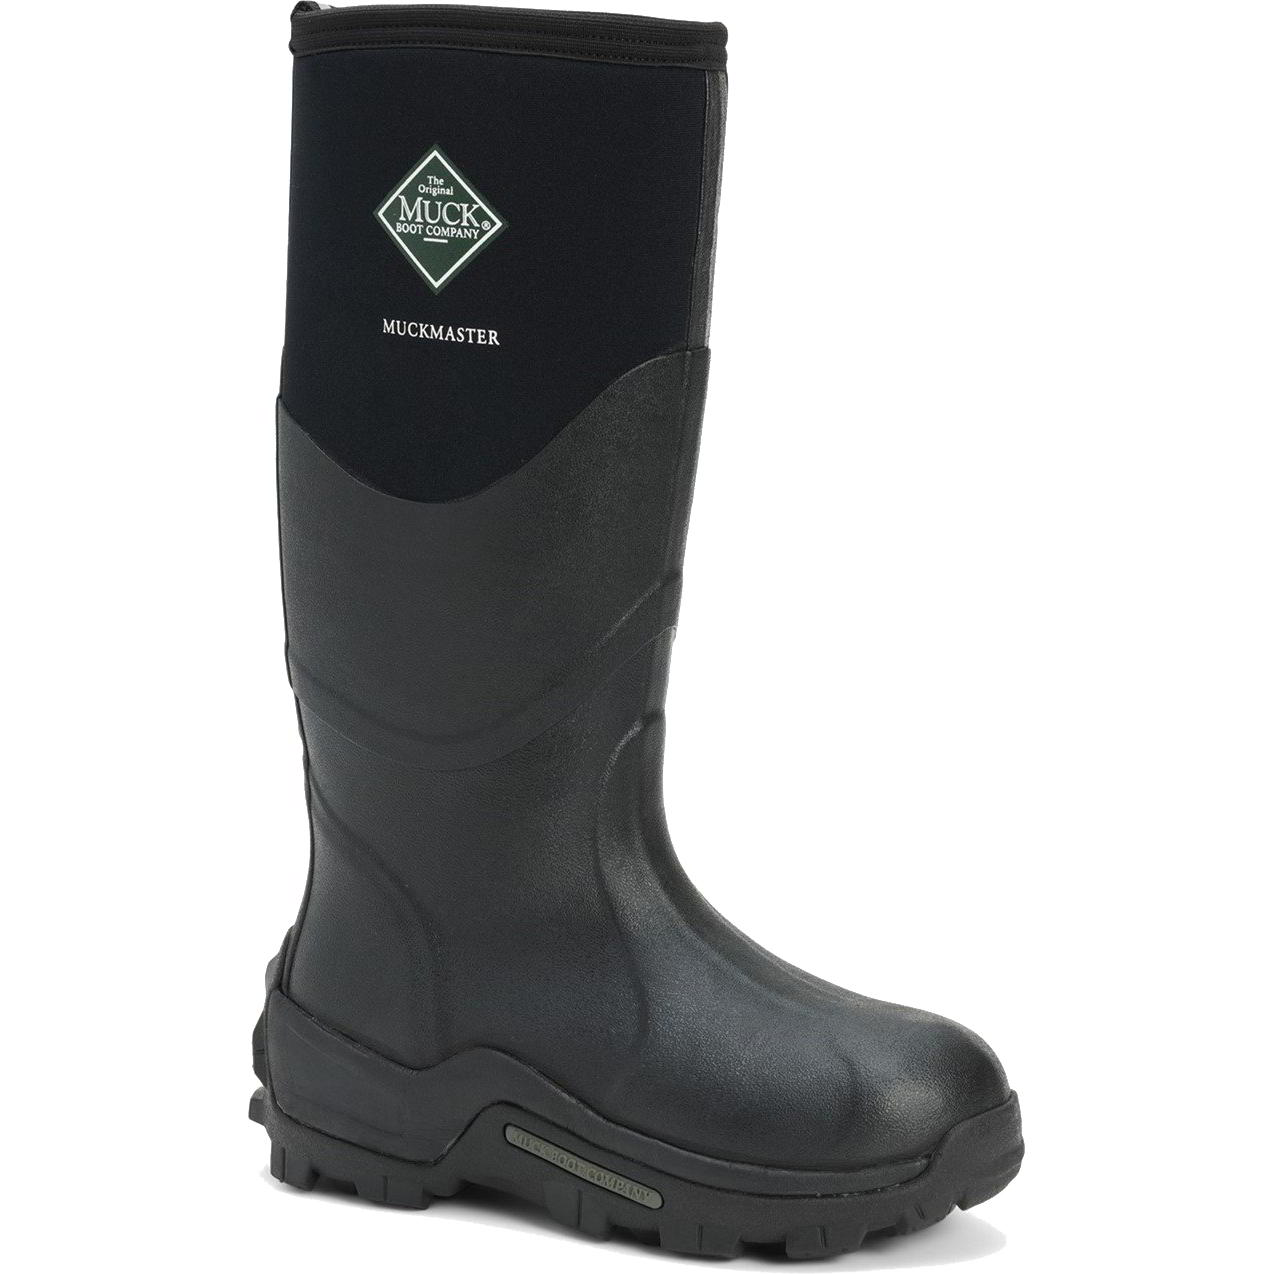 Muck Boots Mens Womens Master Neoprene Wellies Rain - UK 12 Black 2951